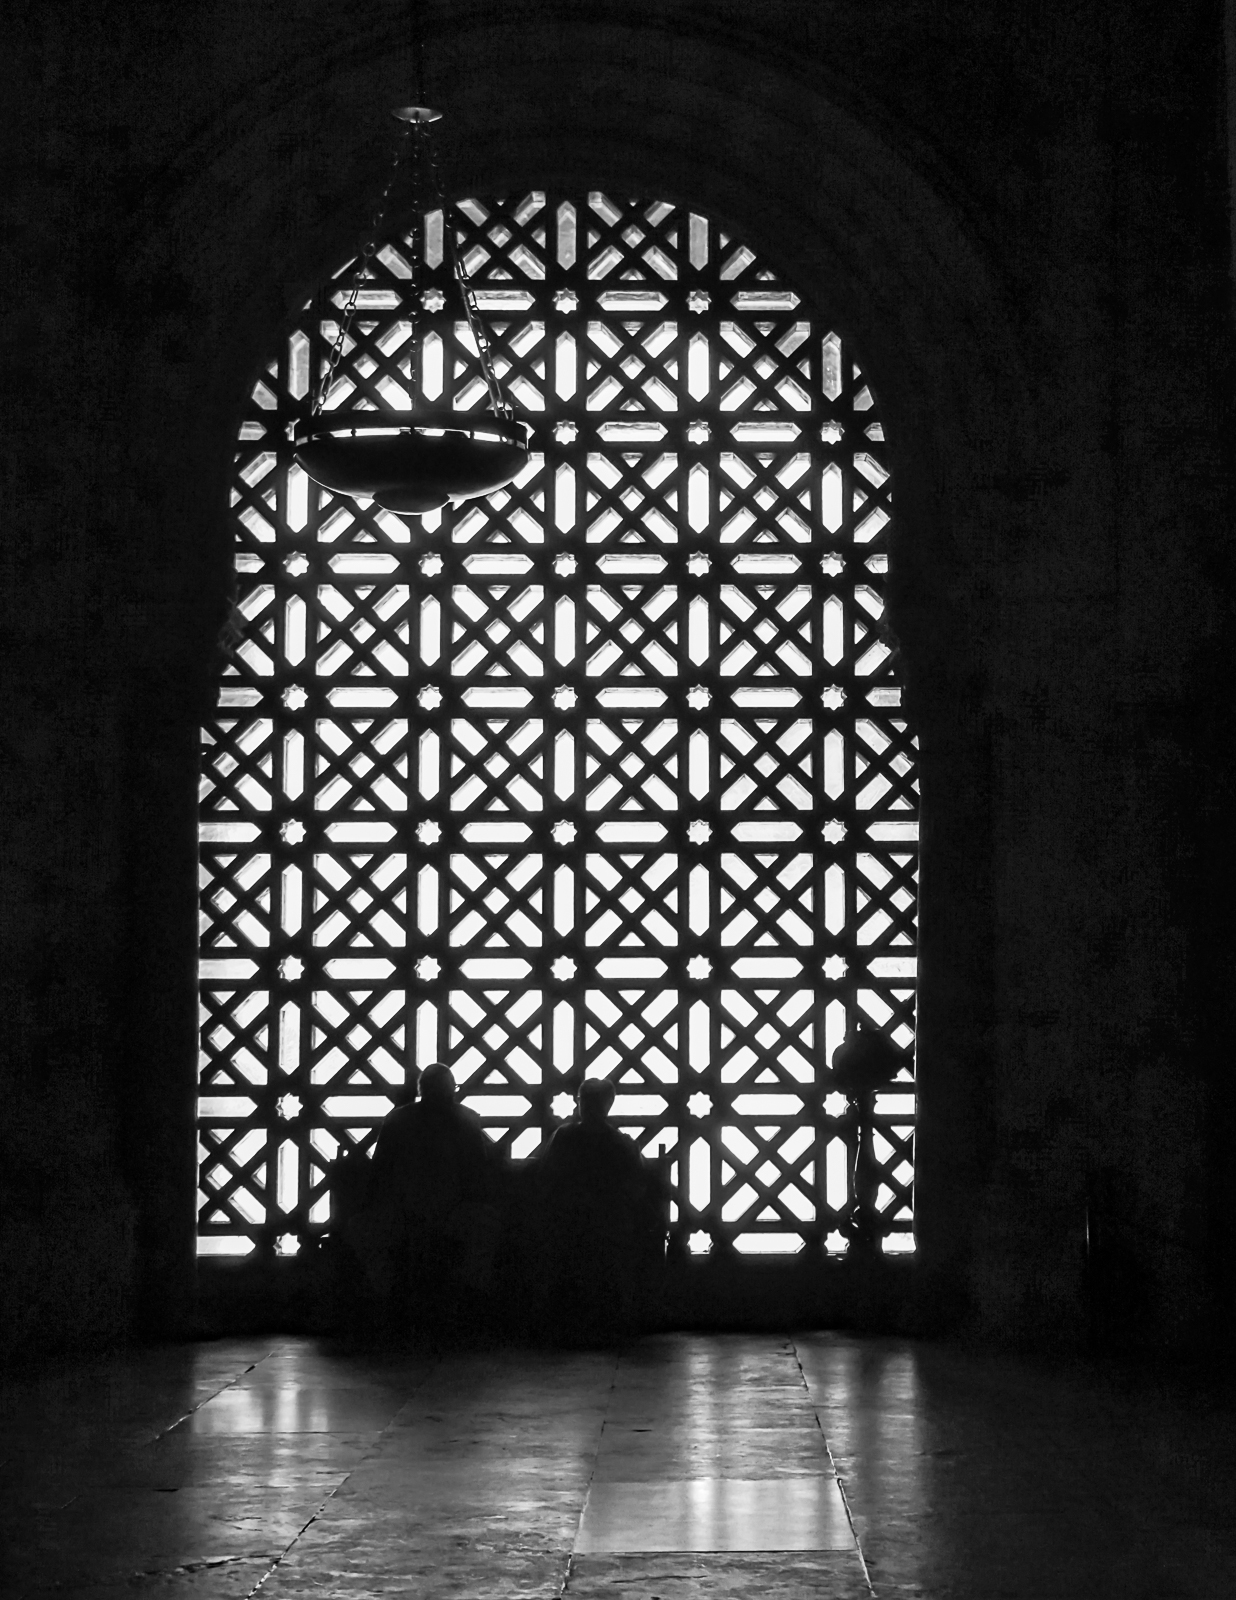 Mezquita Window